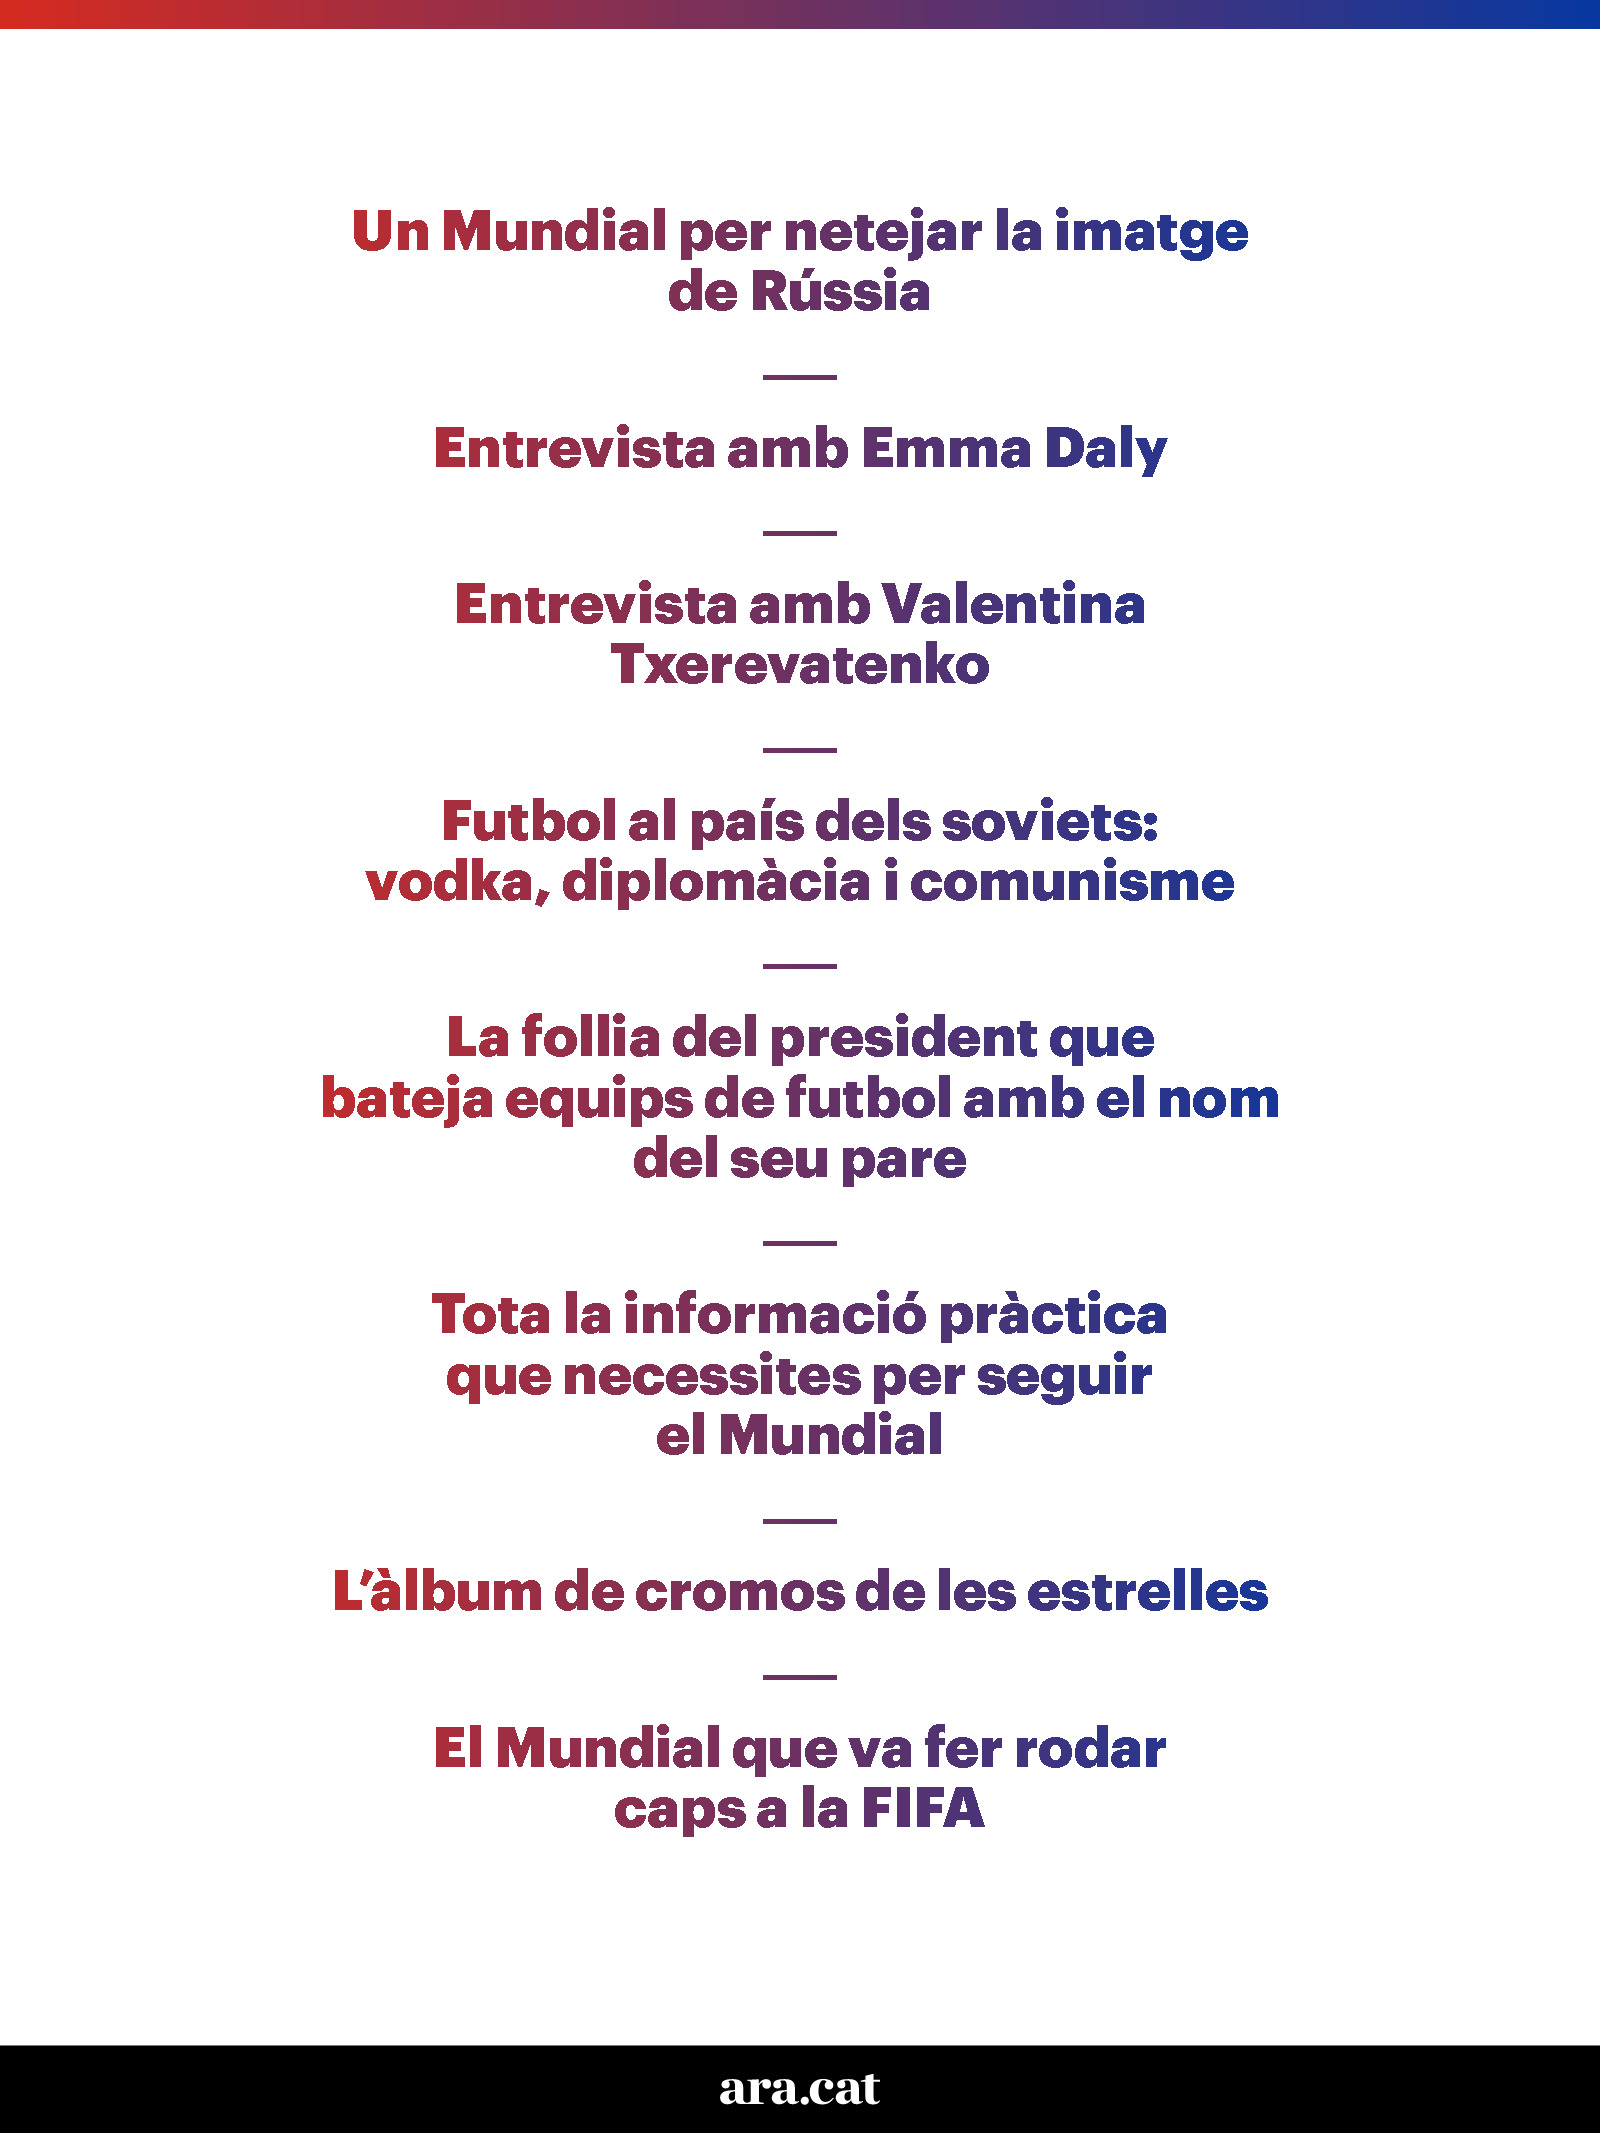 Tot el que has de saber sobre el Mundial de Rússia 2